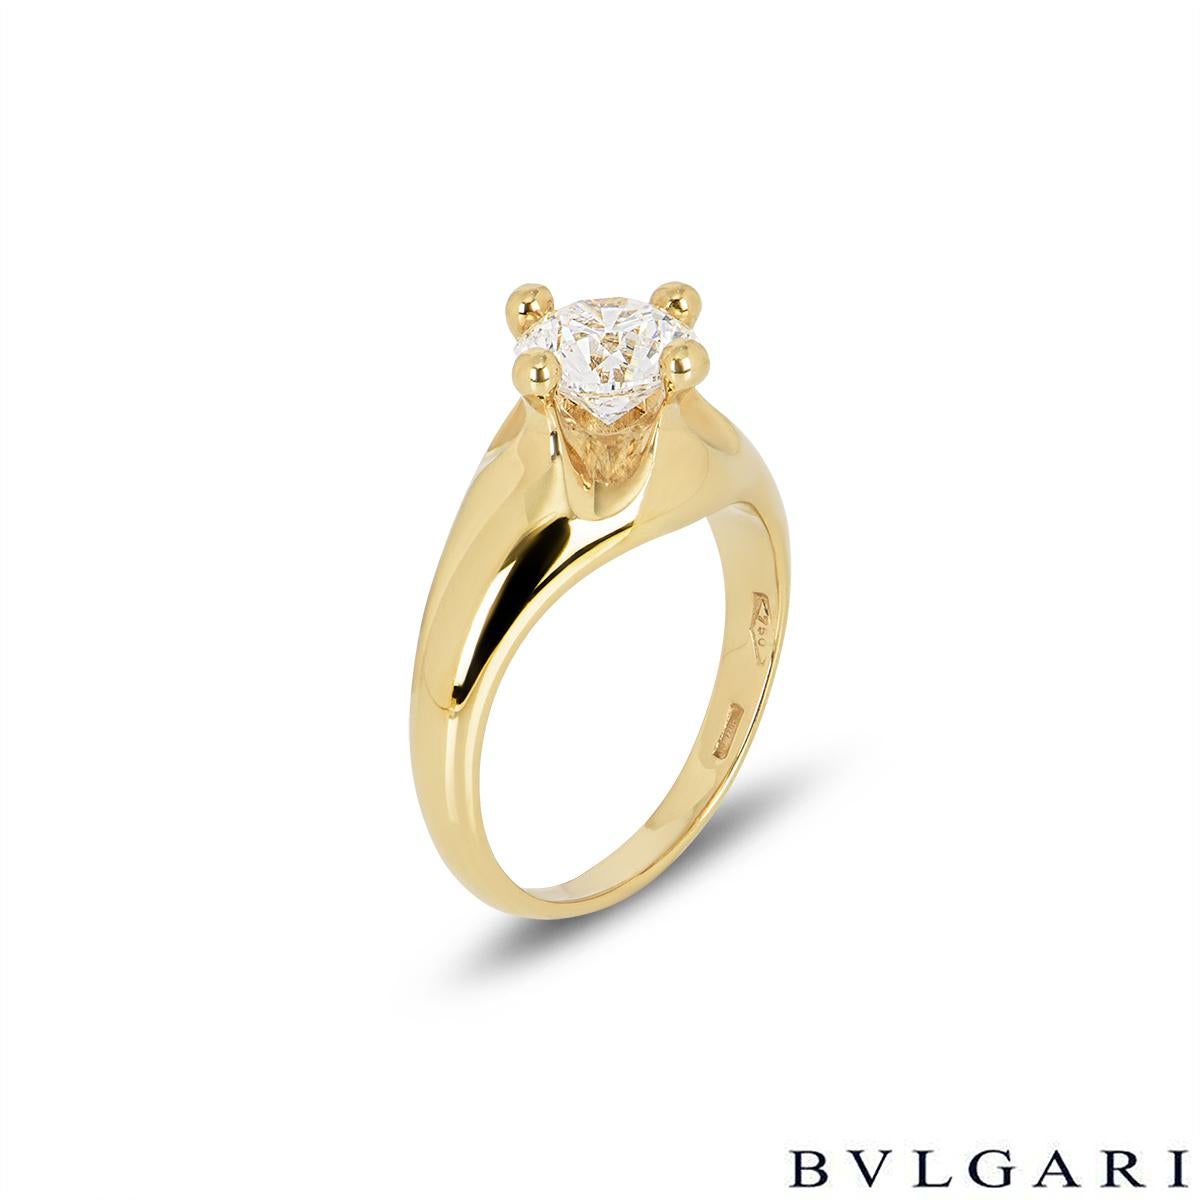 Eine atemberaubende 18k Gelbgold Bvlgari Diamant Verlobungsring. In der Mitte des Rings befindet sich ein runder Diamant mit Brillantschliff von 1,00 Karat in einer erhöhten Fassung mit vier Krallen, Farbe F und Reinheit VS1. Der konisch zulaufende